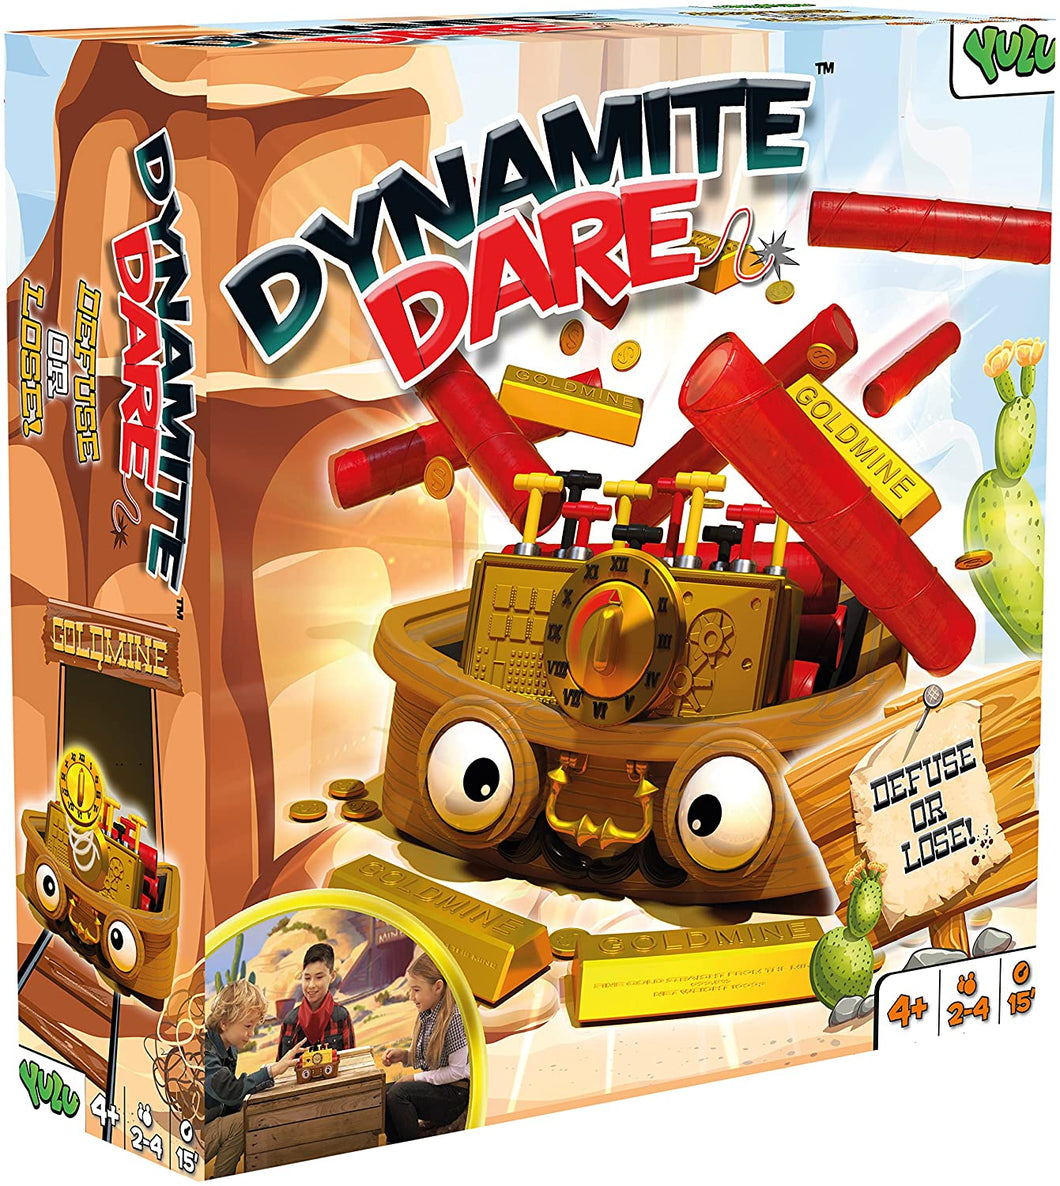 Dynamite Dare